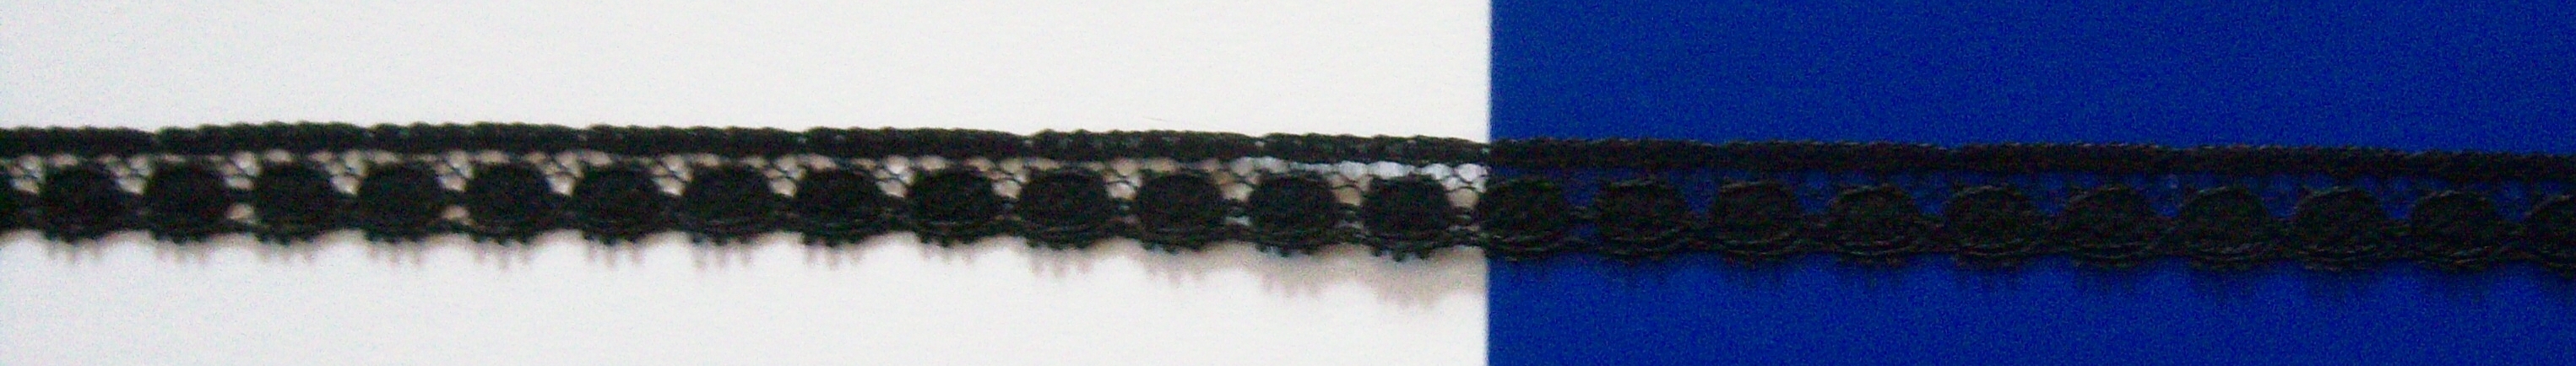 Black 3/8" Lace